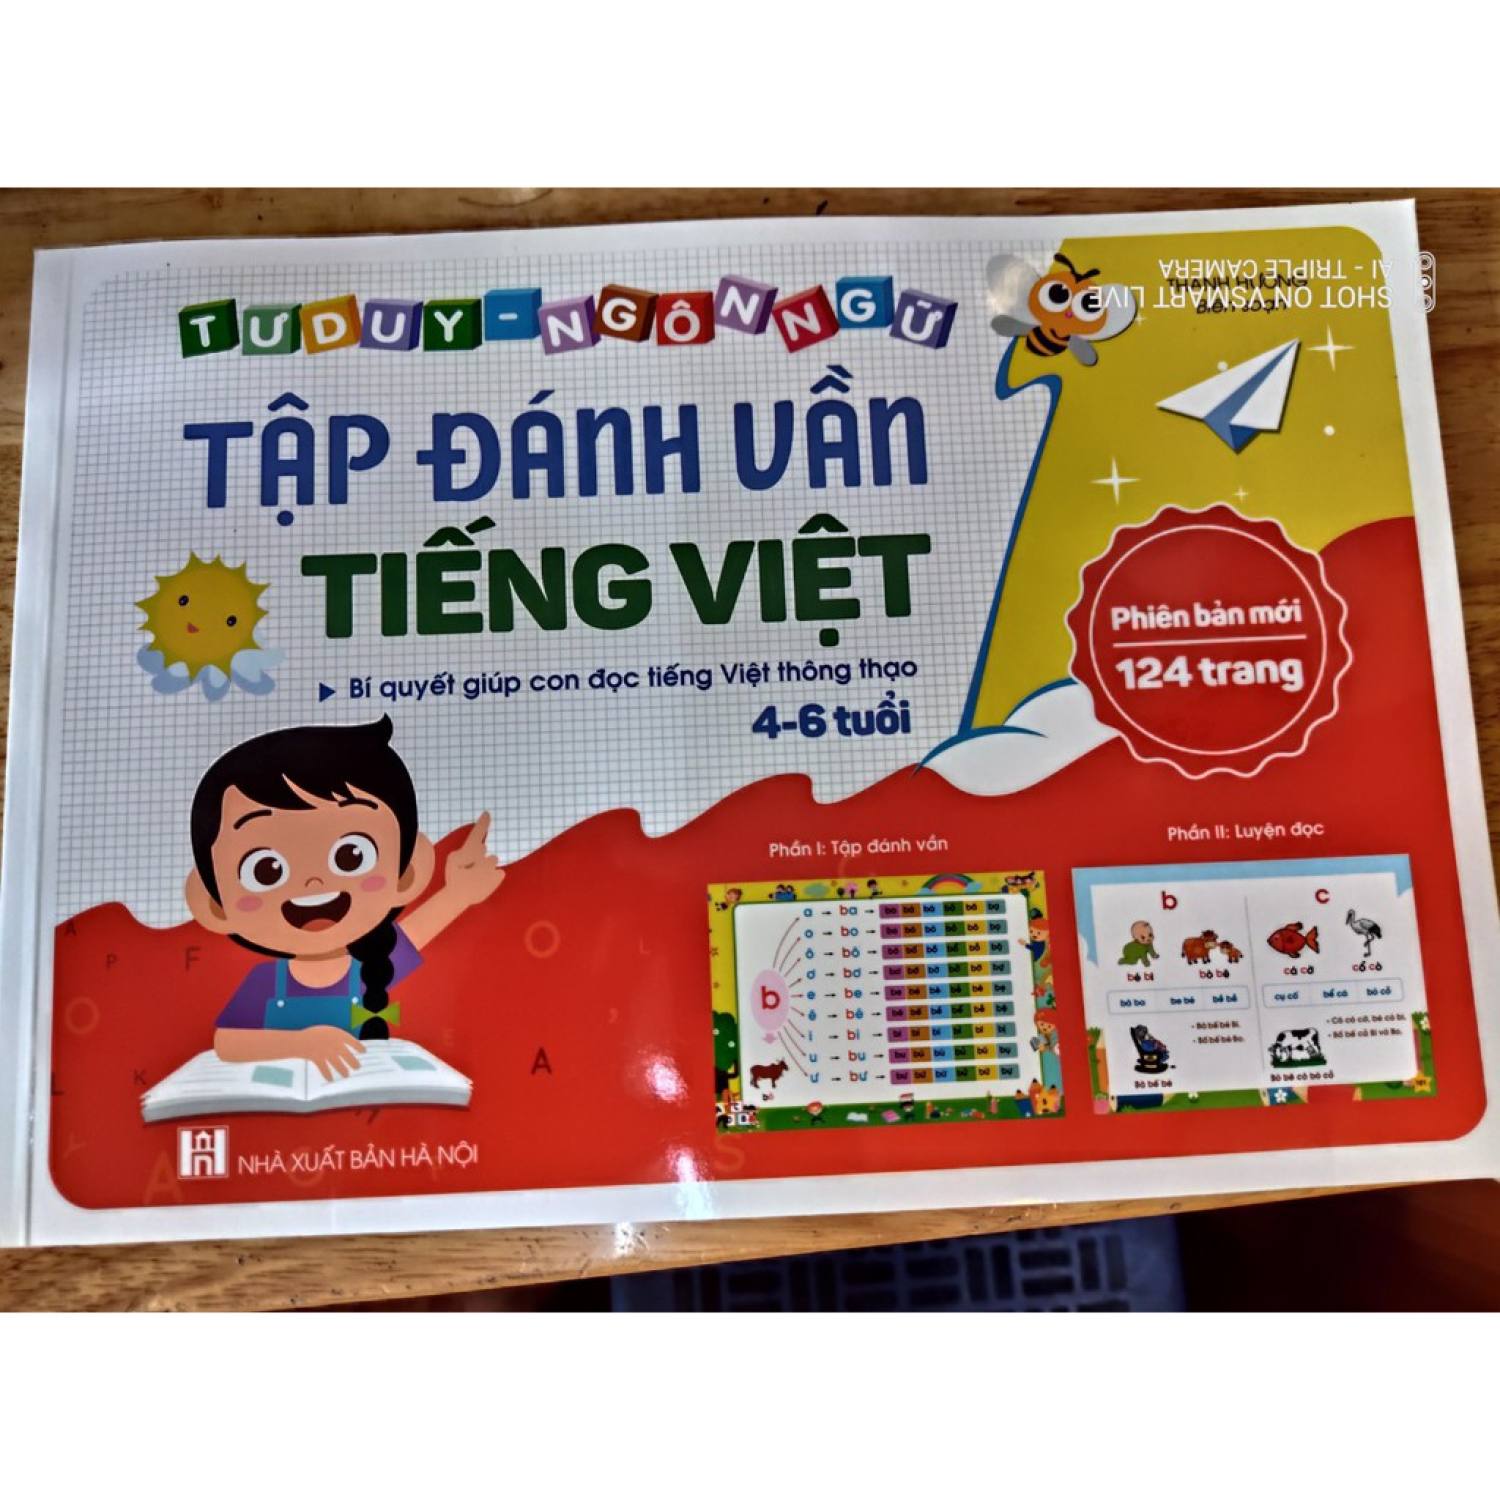 Đánh vần Tiếng Việt và Tư duy ngôn ngữ 124 TRANG giá rẻ